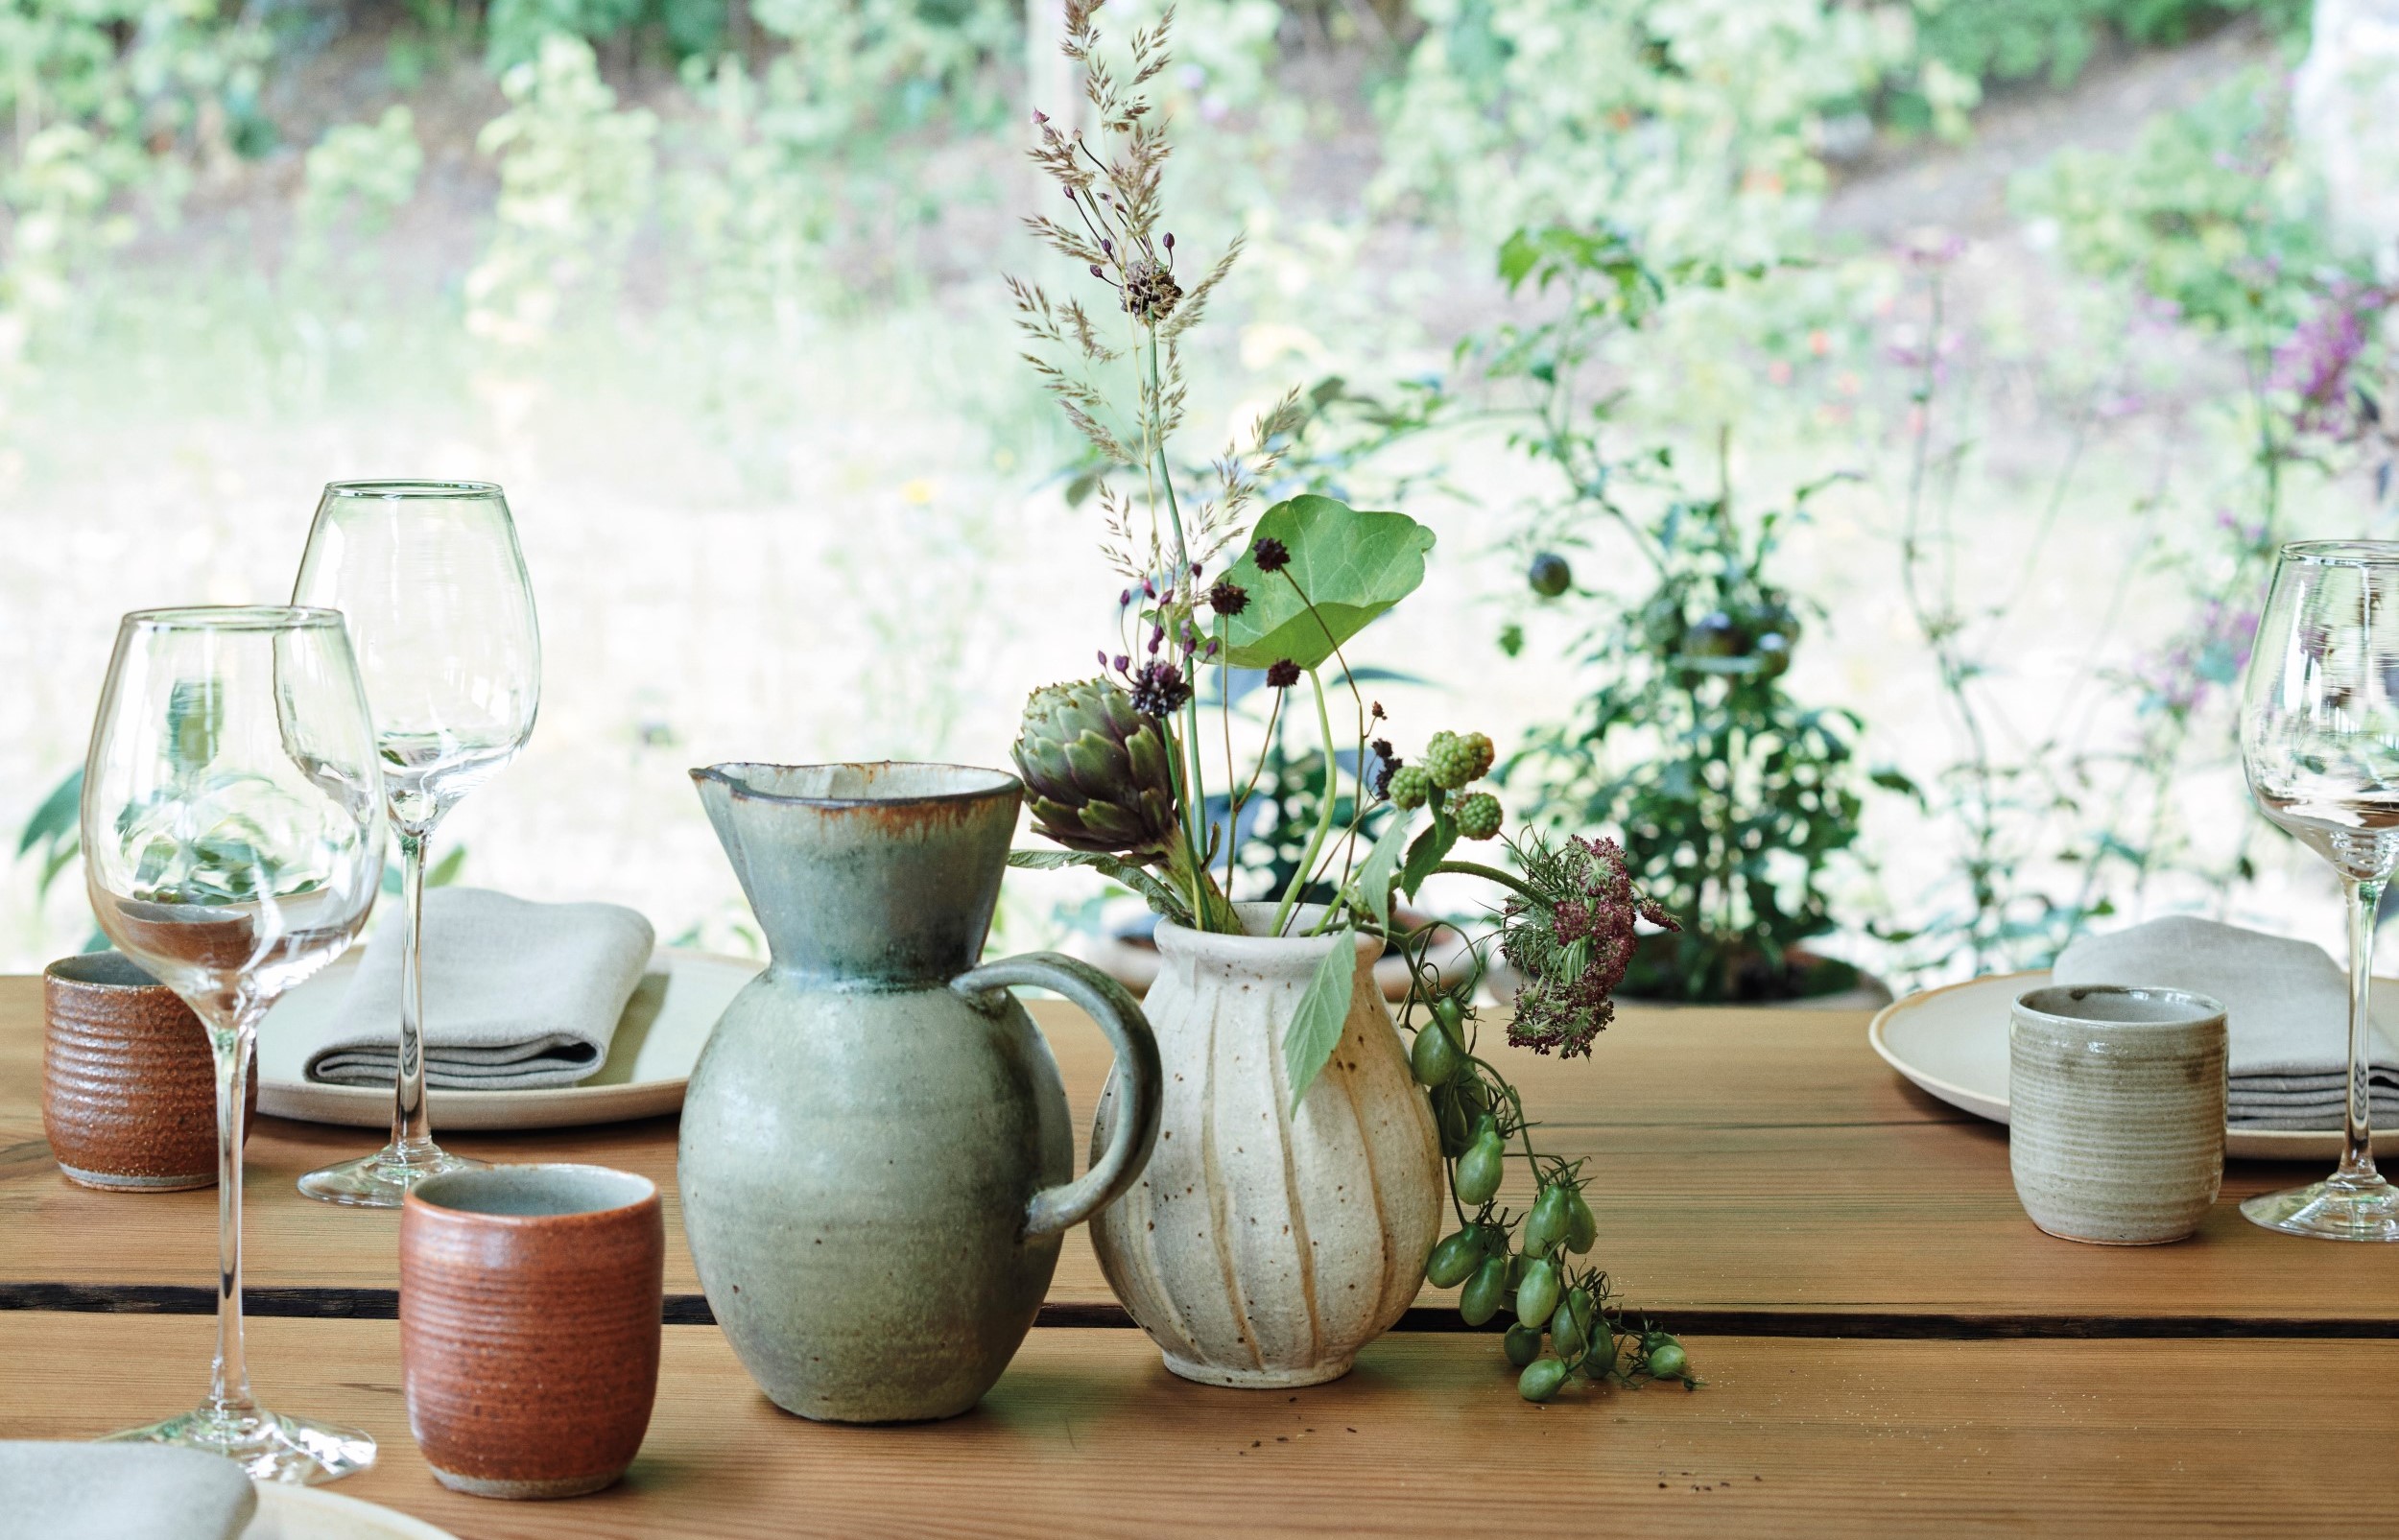 noma 餐廳內充滿手工質感的樸實花器和茶杯器皿，與戶外的自然綠意相互輝映。